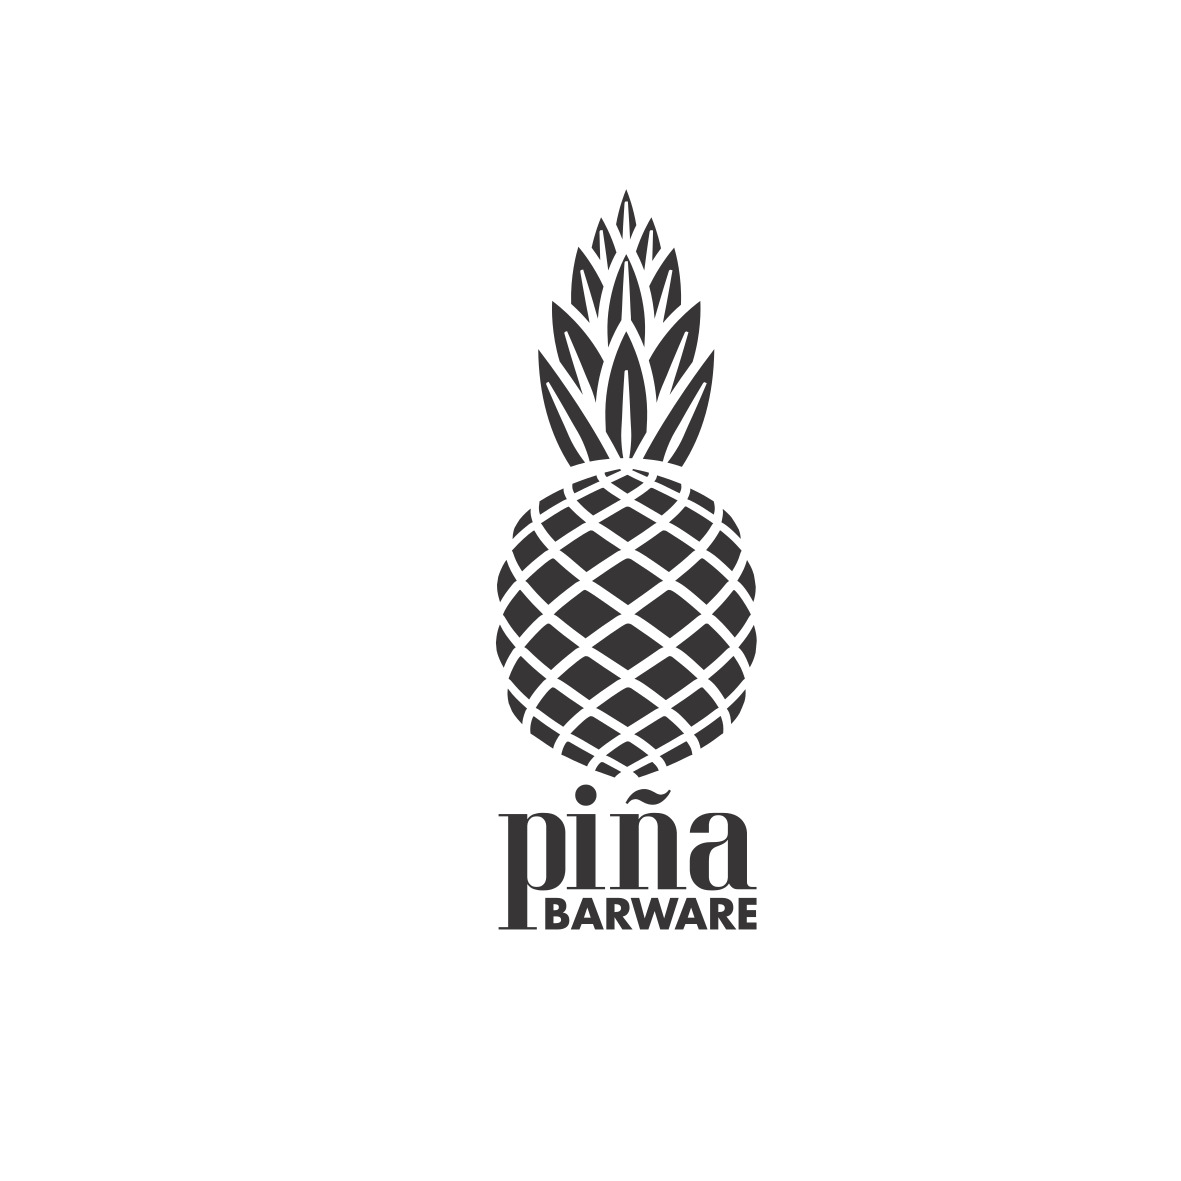 Pina Barware